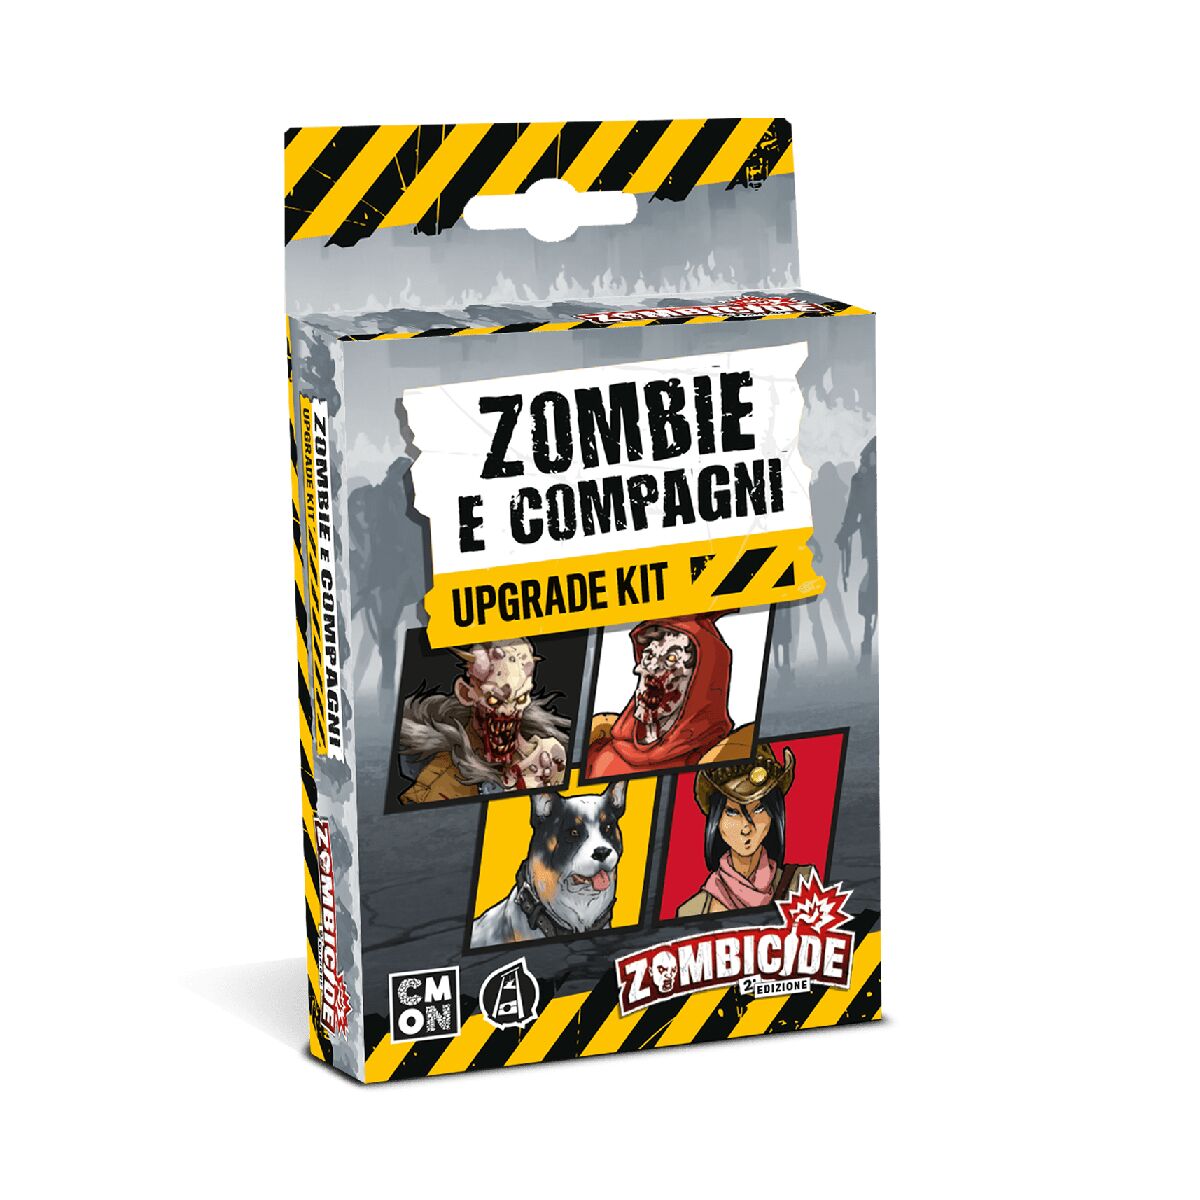 Zombie e Compagni Upgrade Kit - Zombicide Seconda Edizione espansione